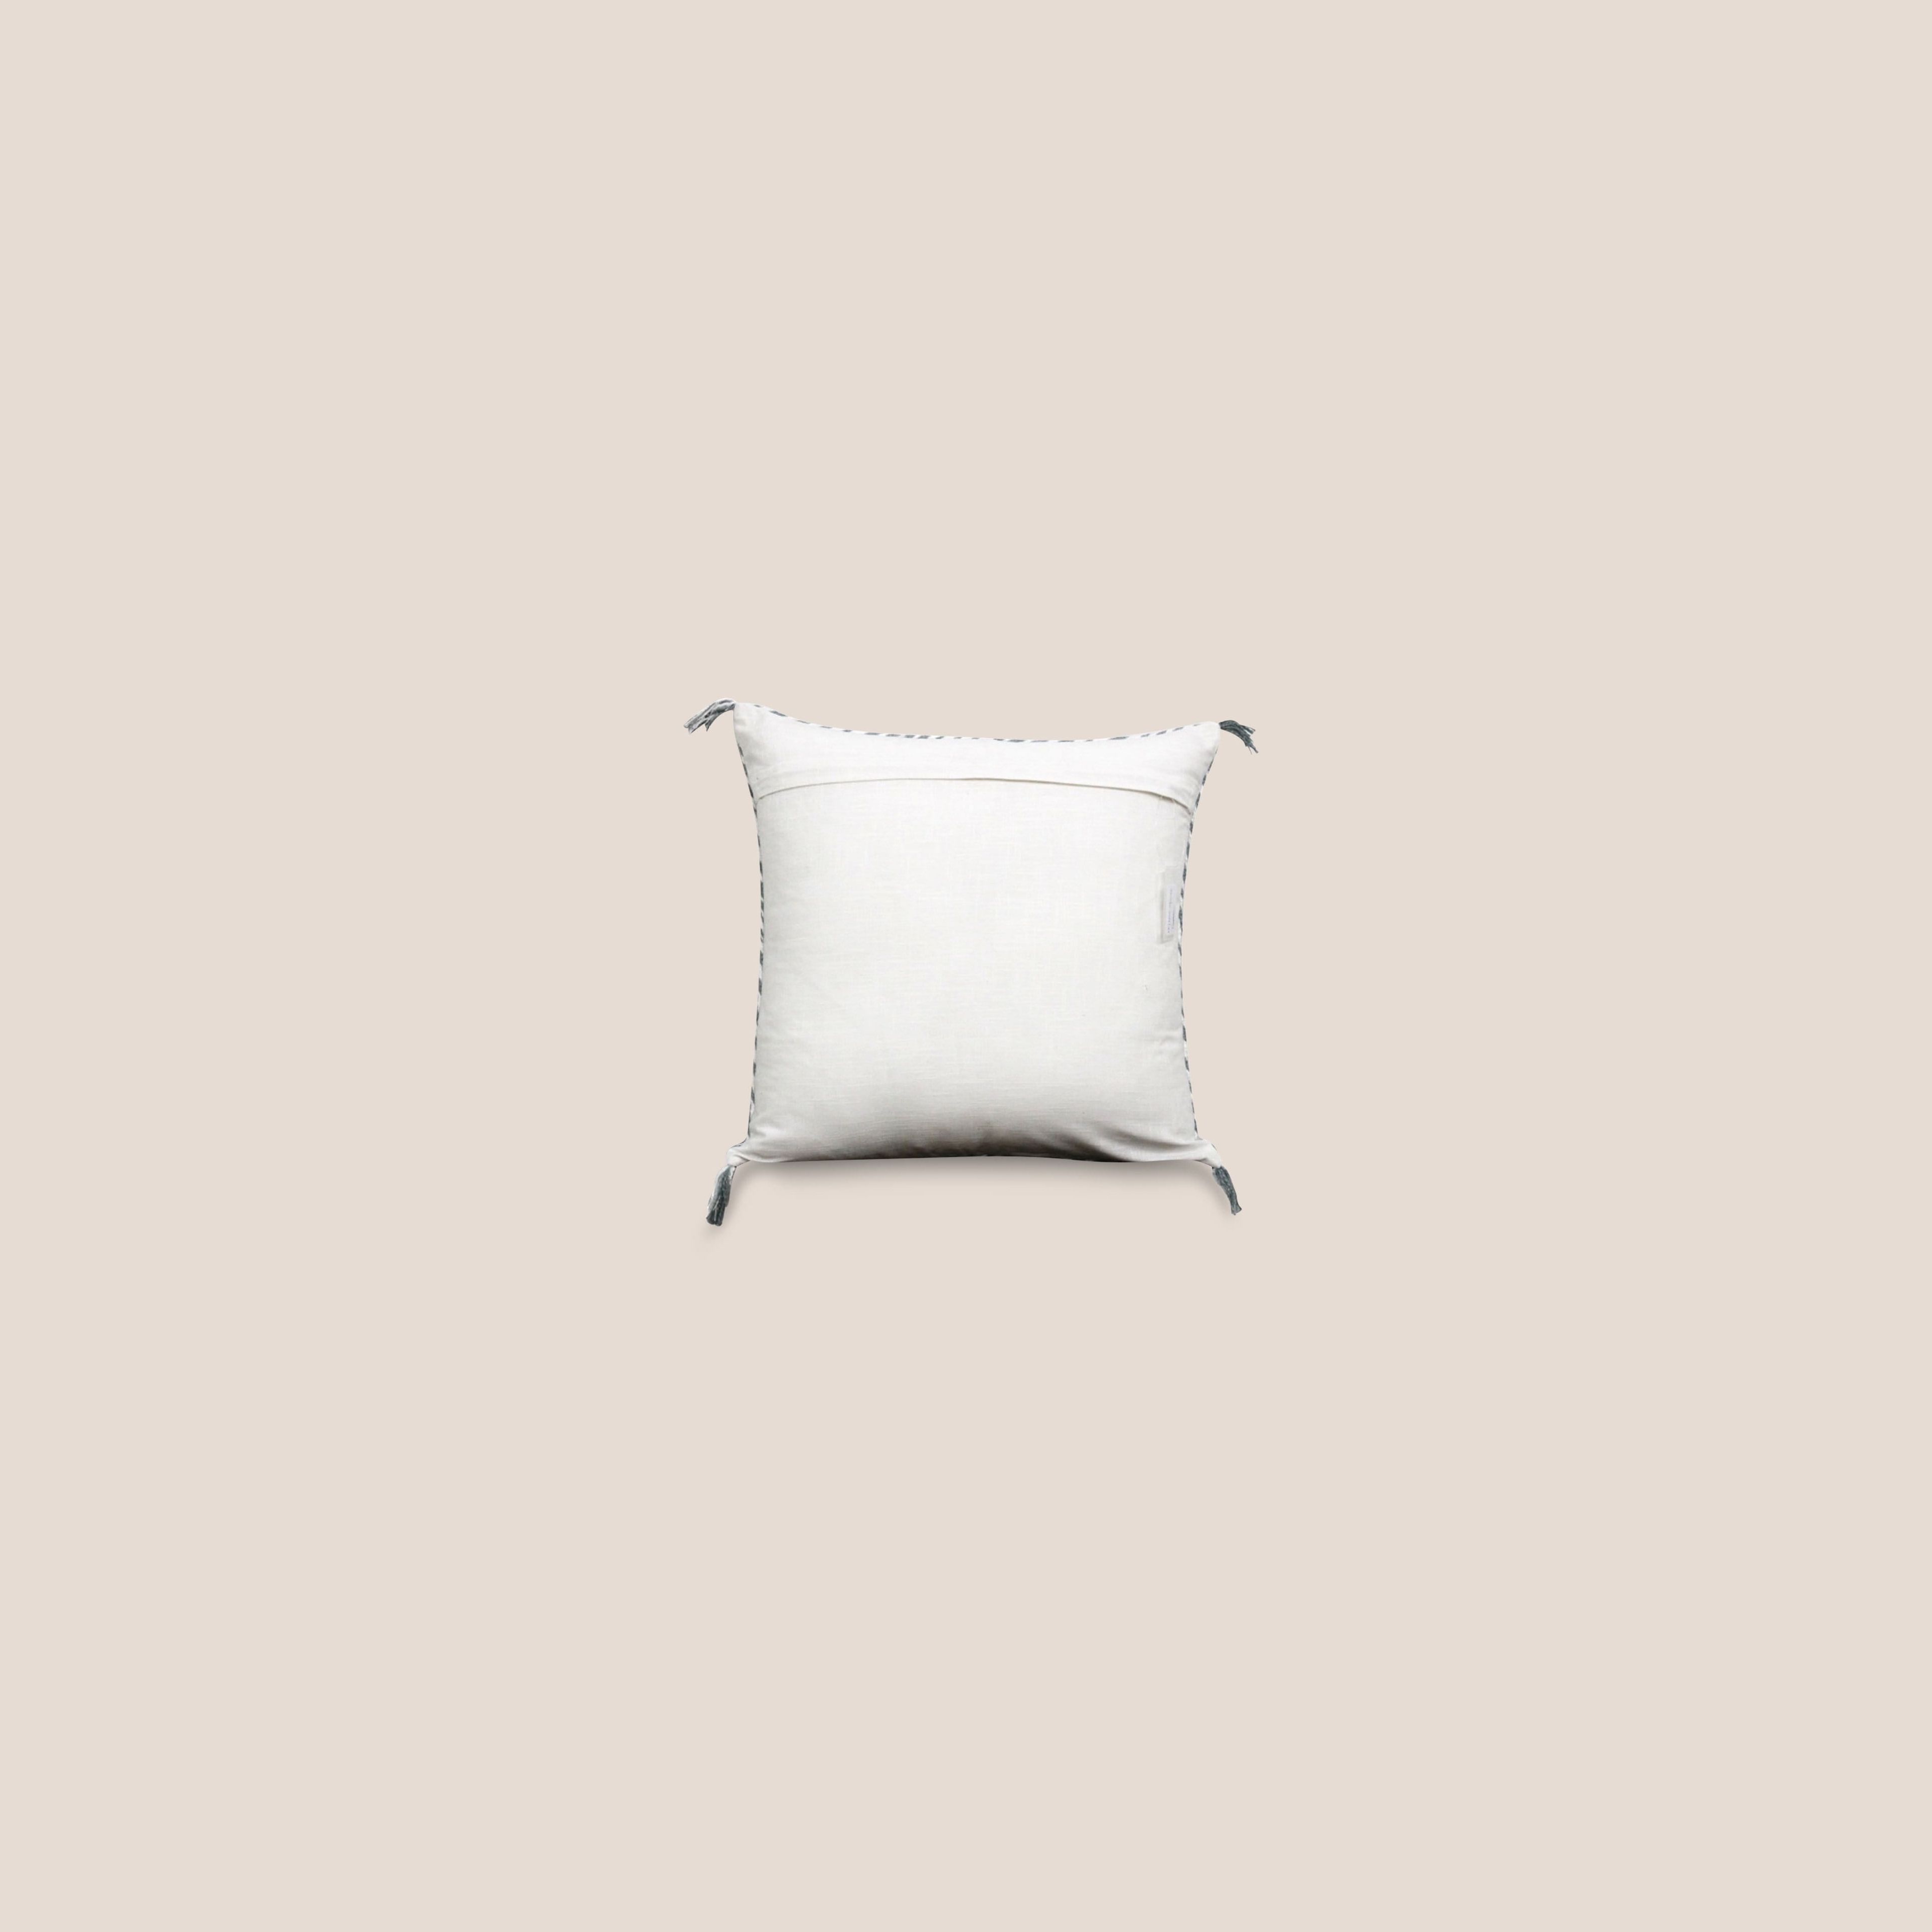 Sabra Pillow Cover Lana